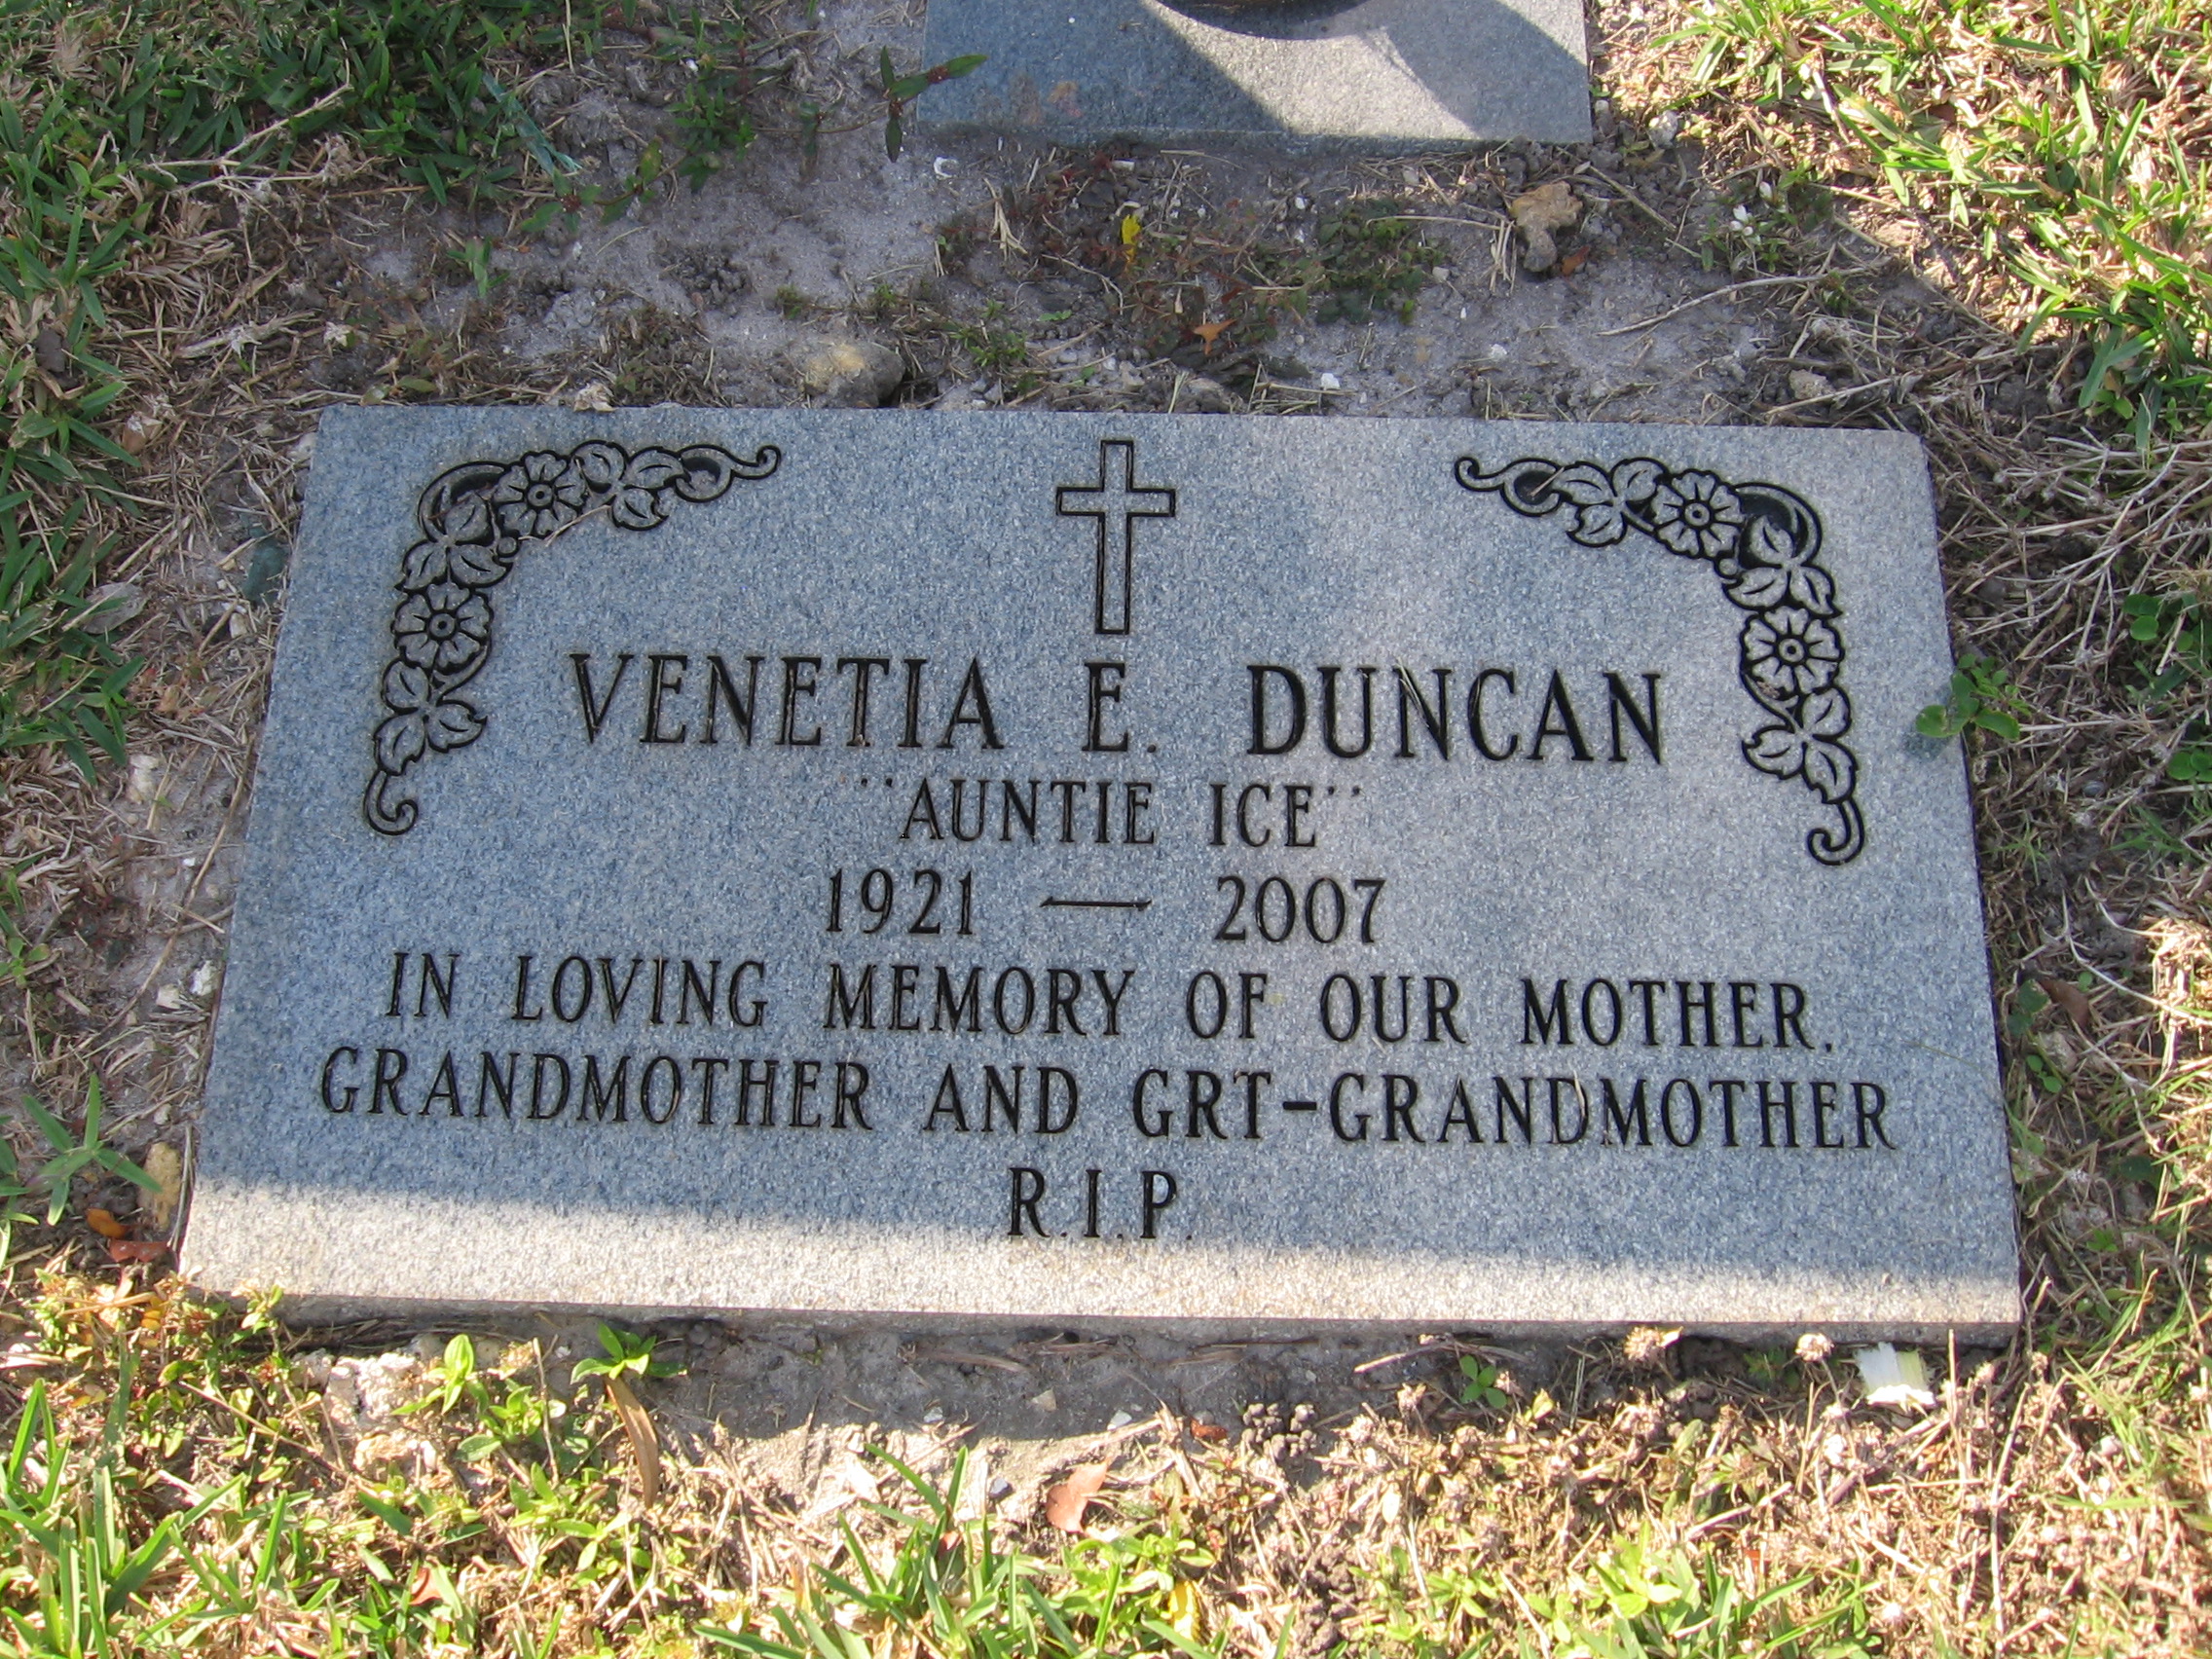 Venetia E Duncan